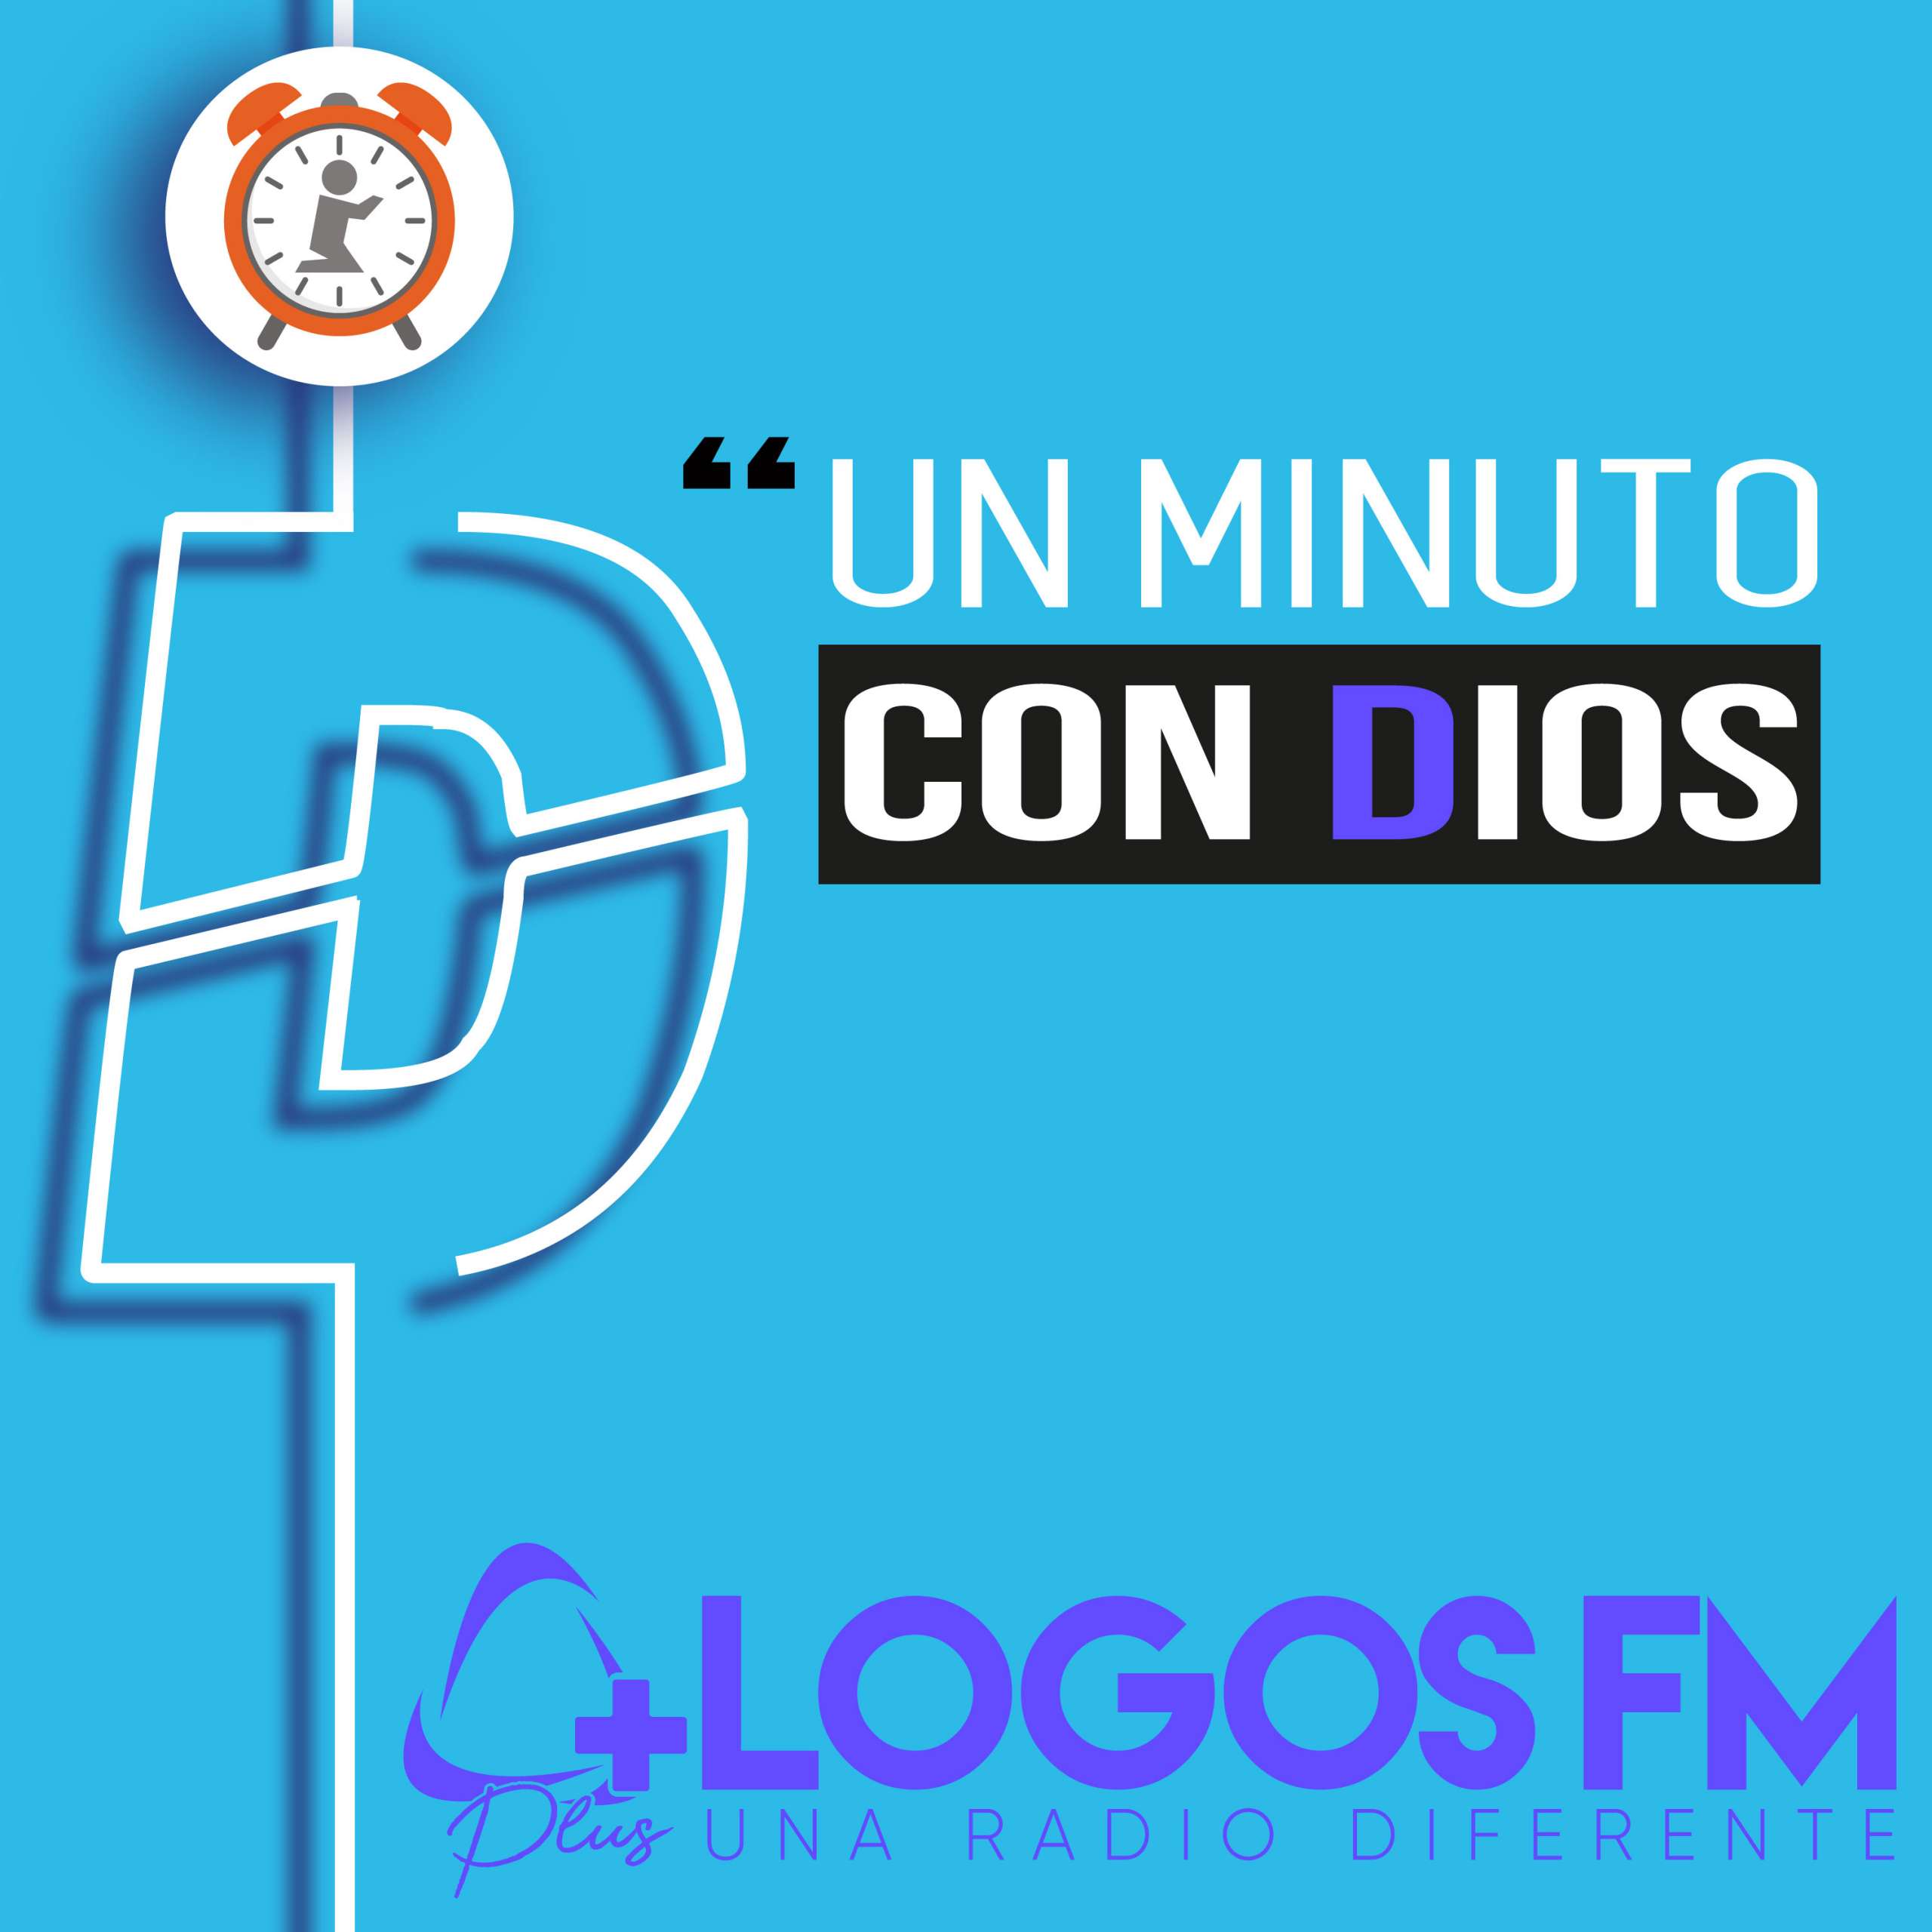 Un minuto con Dios - Episodio 396 - Oniss García